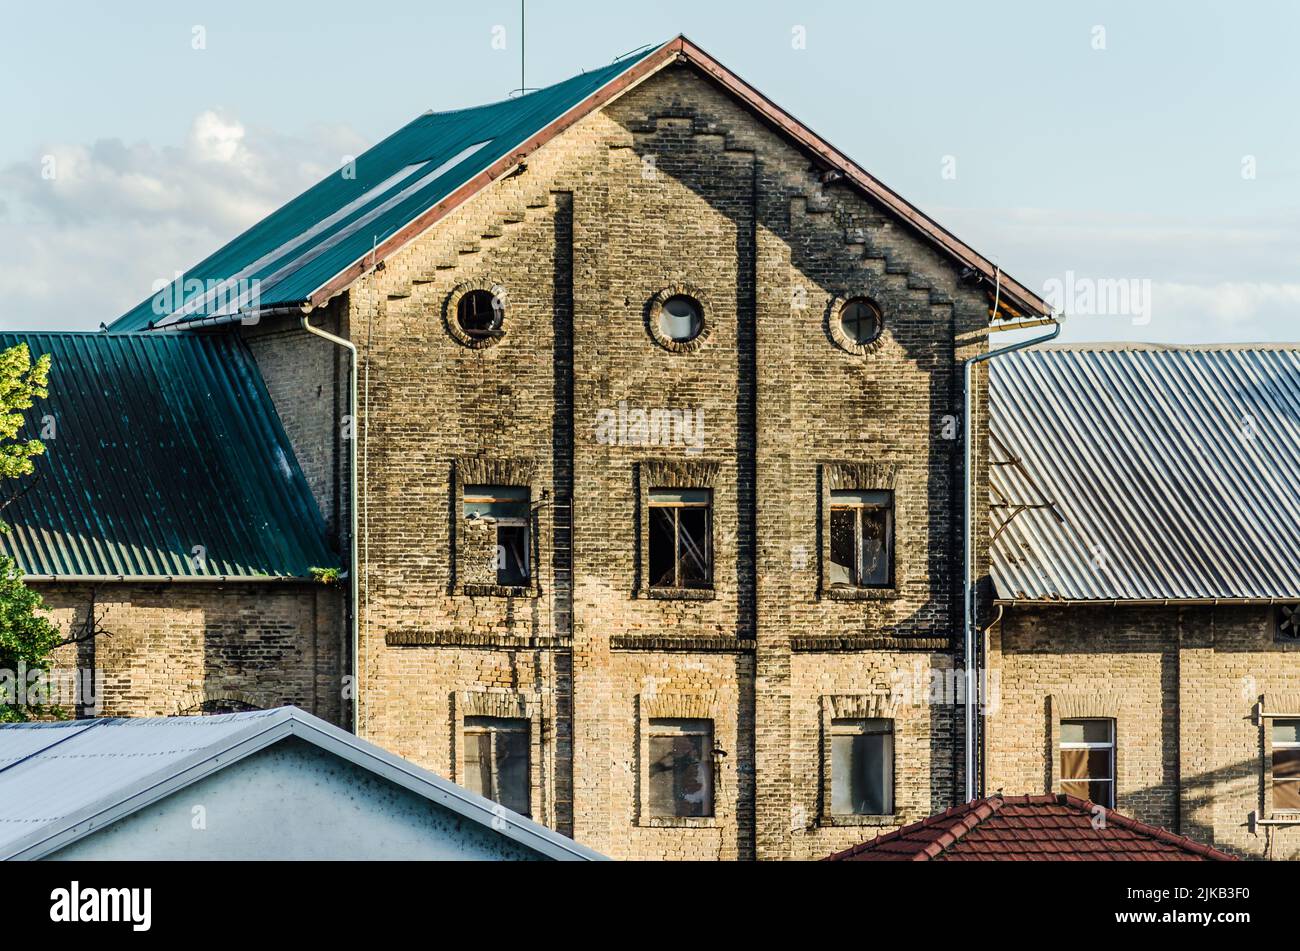 Srbobran ist eine Stadt in Serbien. Blick auf das alte Mühlengebäude in Srbobran. Stockfoto